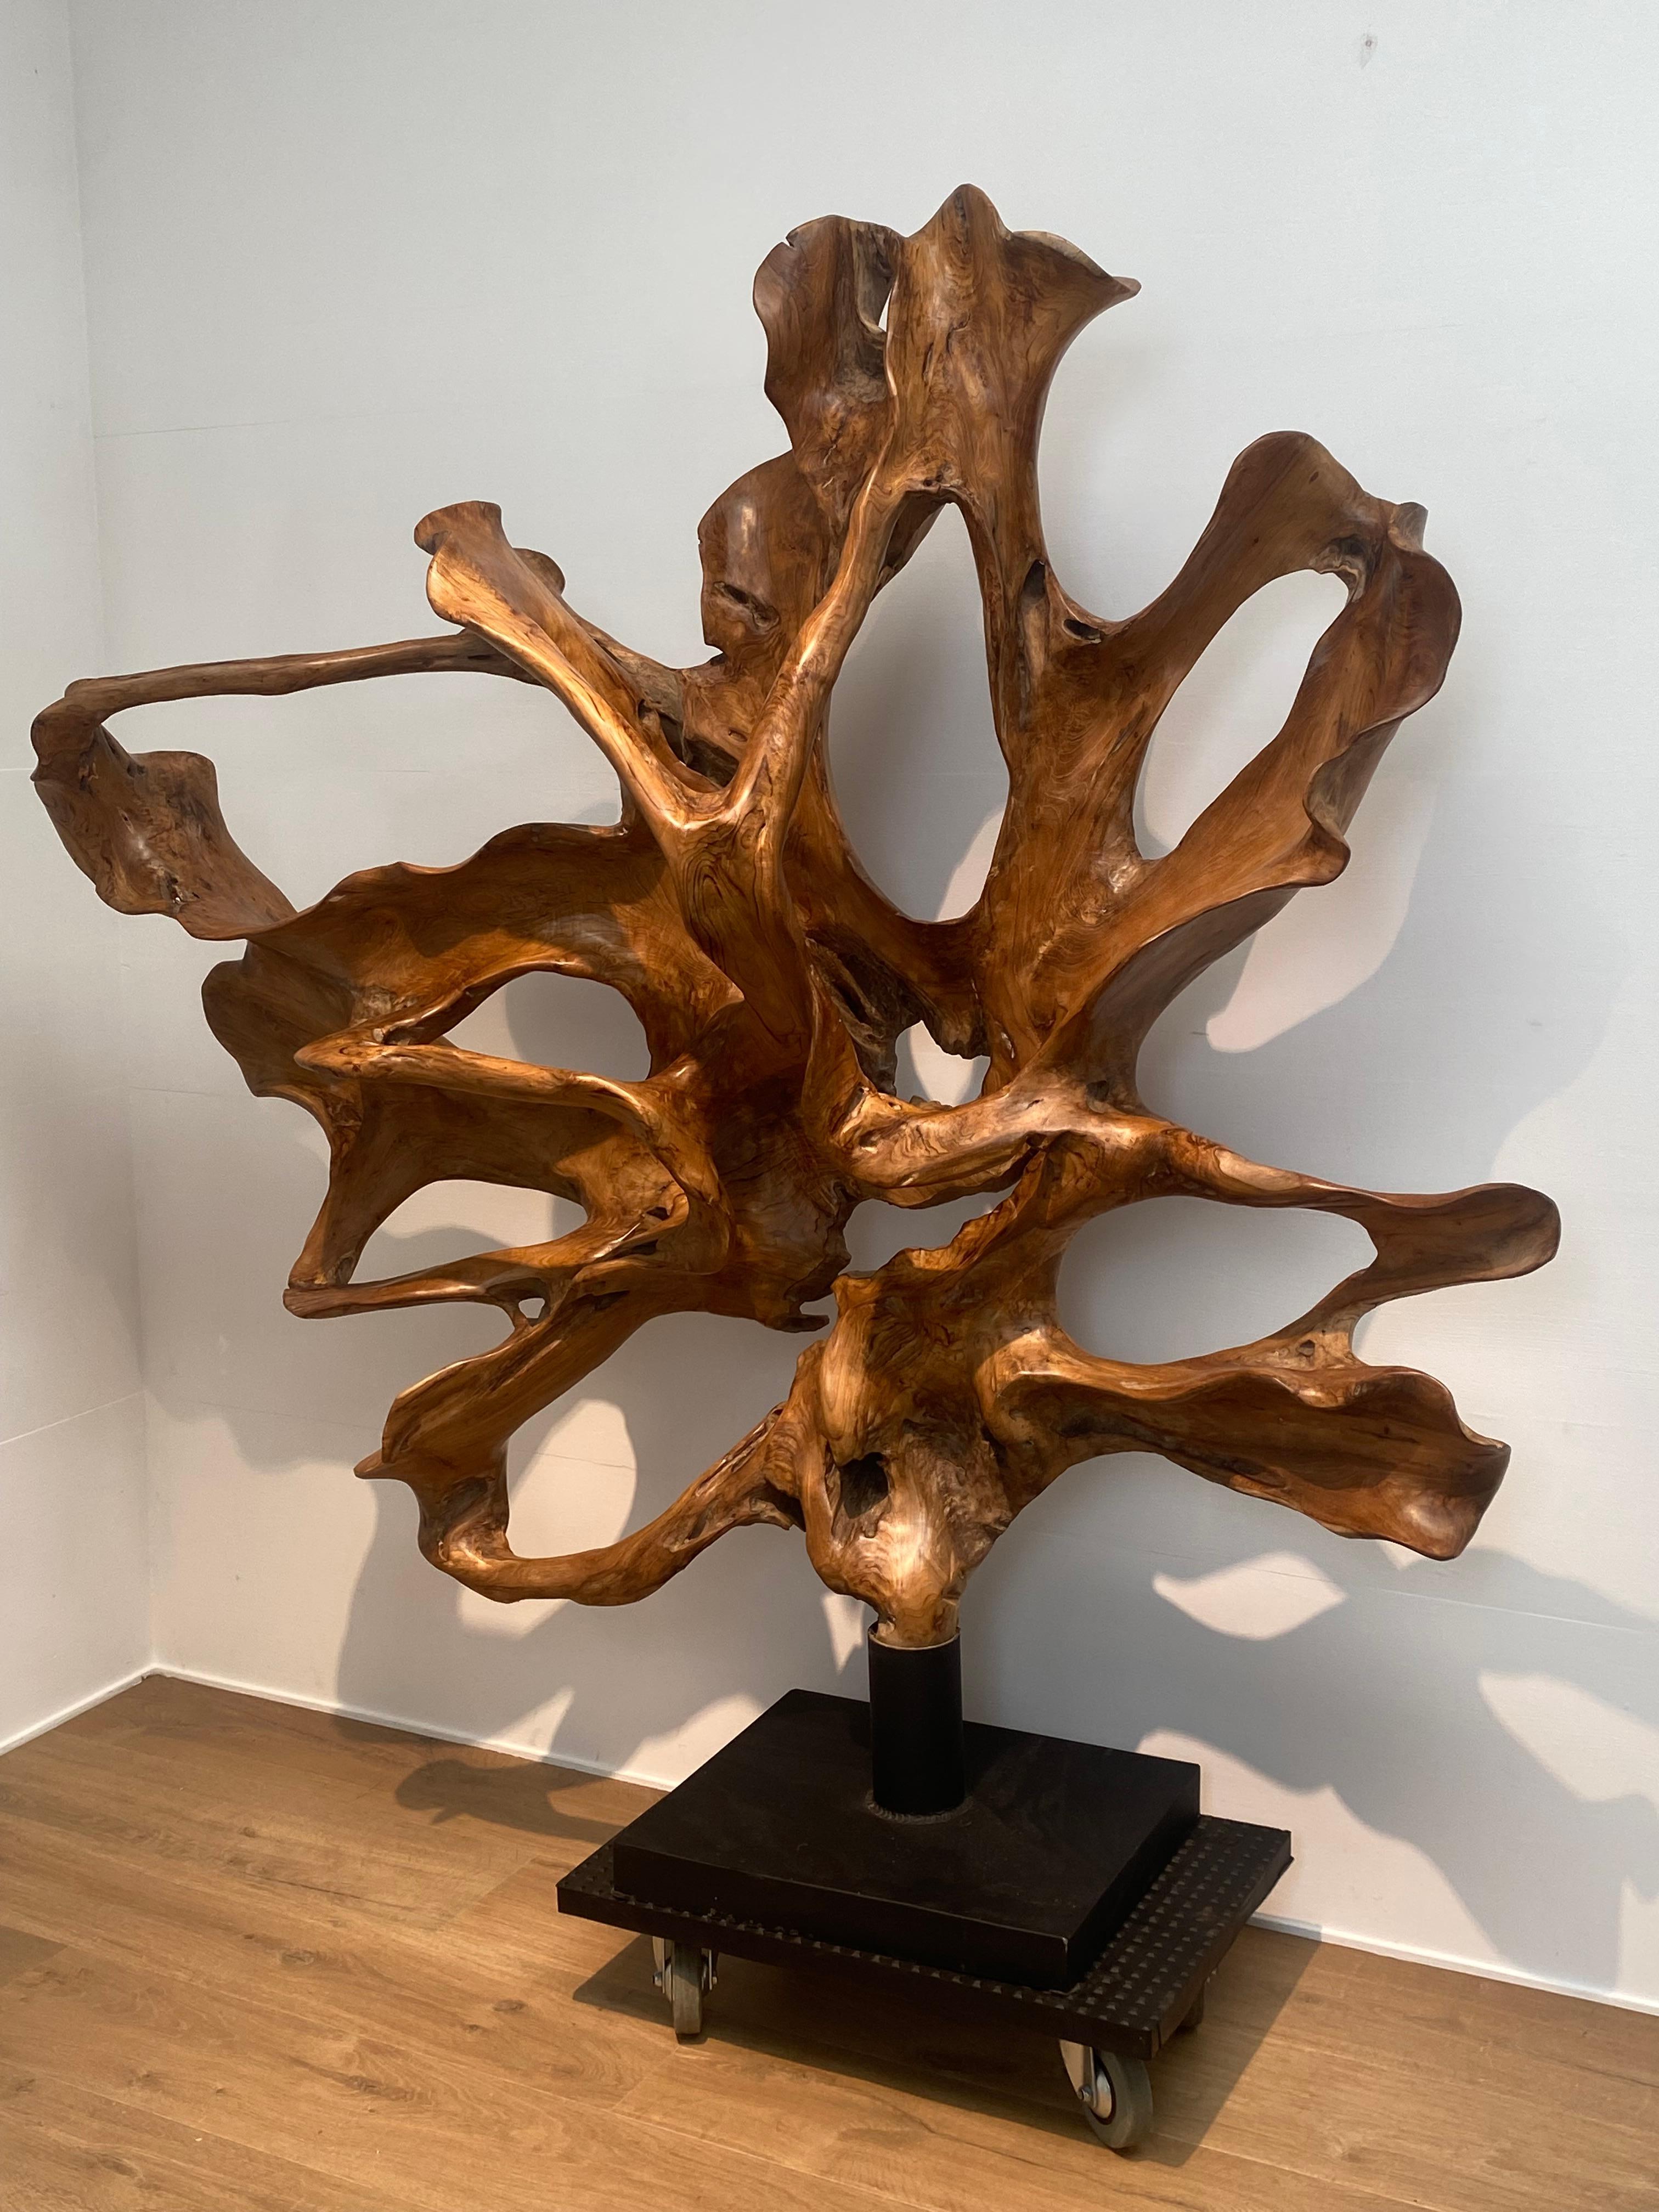 Sculpture contemporaine exceptionnelle en bois de teck poli,
étonnante forme organique ronde,
fabriqué à partir d'une vieille racine en bois d'une seule pièce,
monté sur un socle en fer,
peut être placé dans 2 positions, idéal pour diviser une